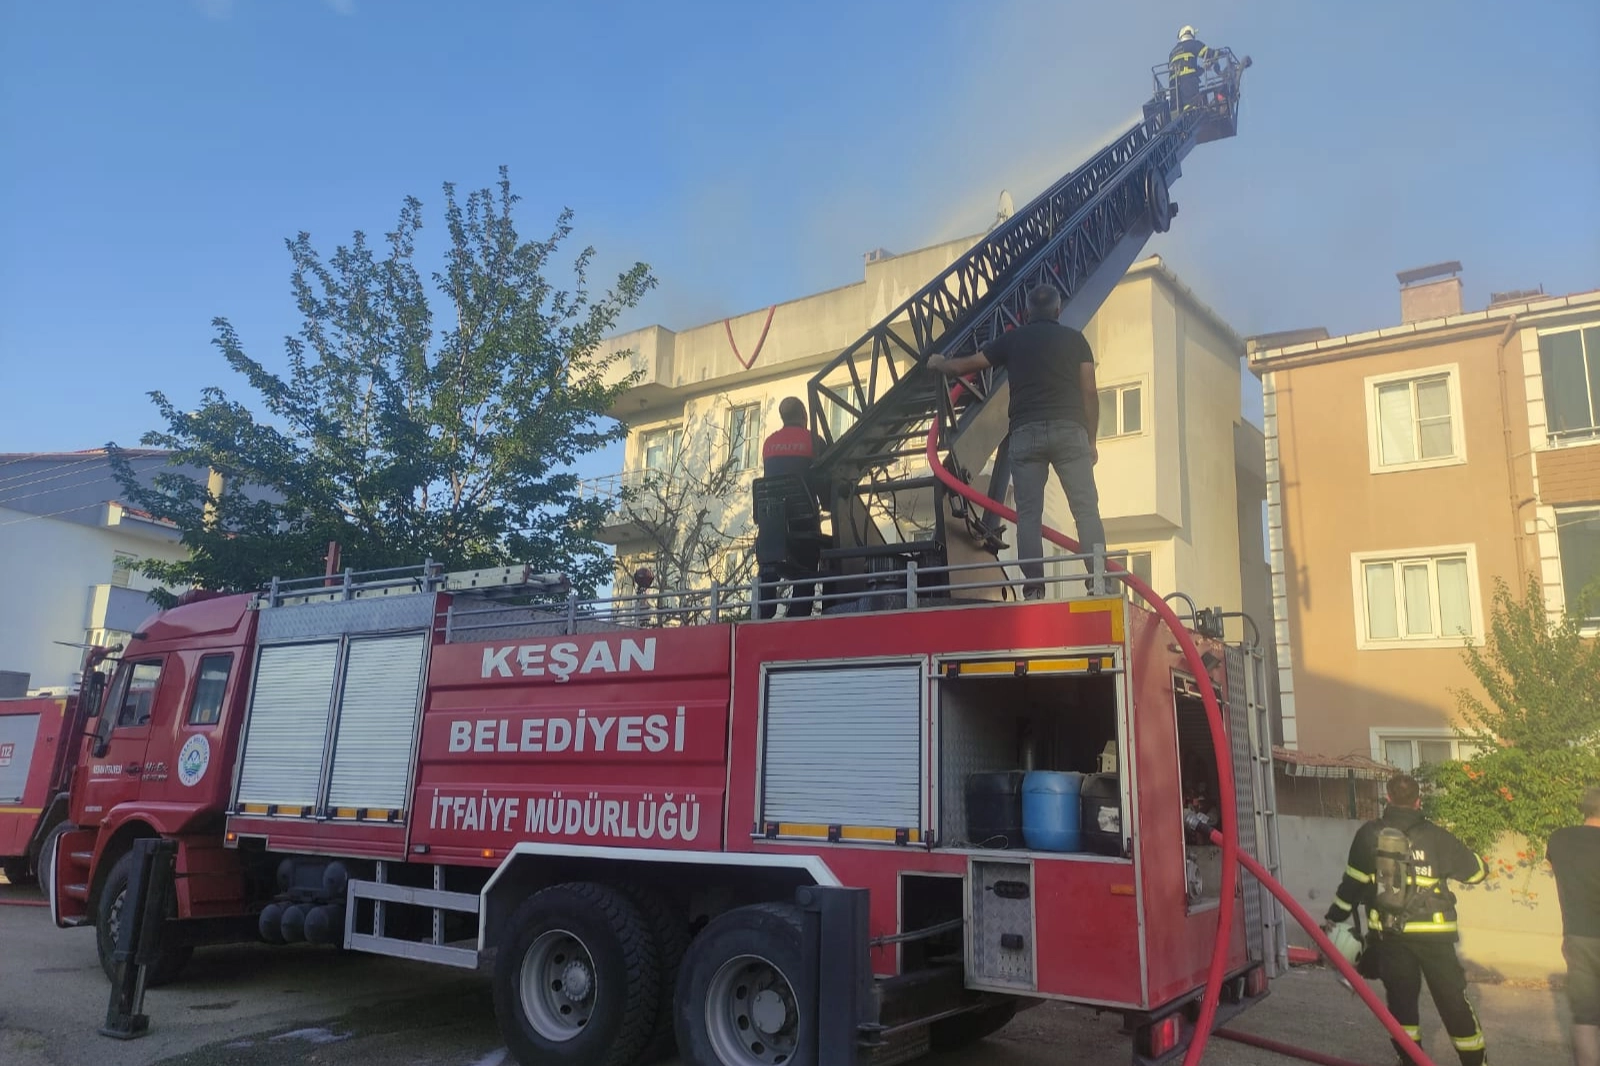 Edirne Keşan'da apartman çatısında yangın